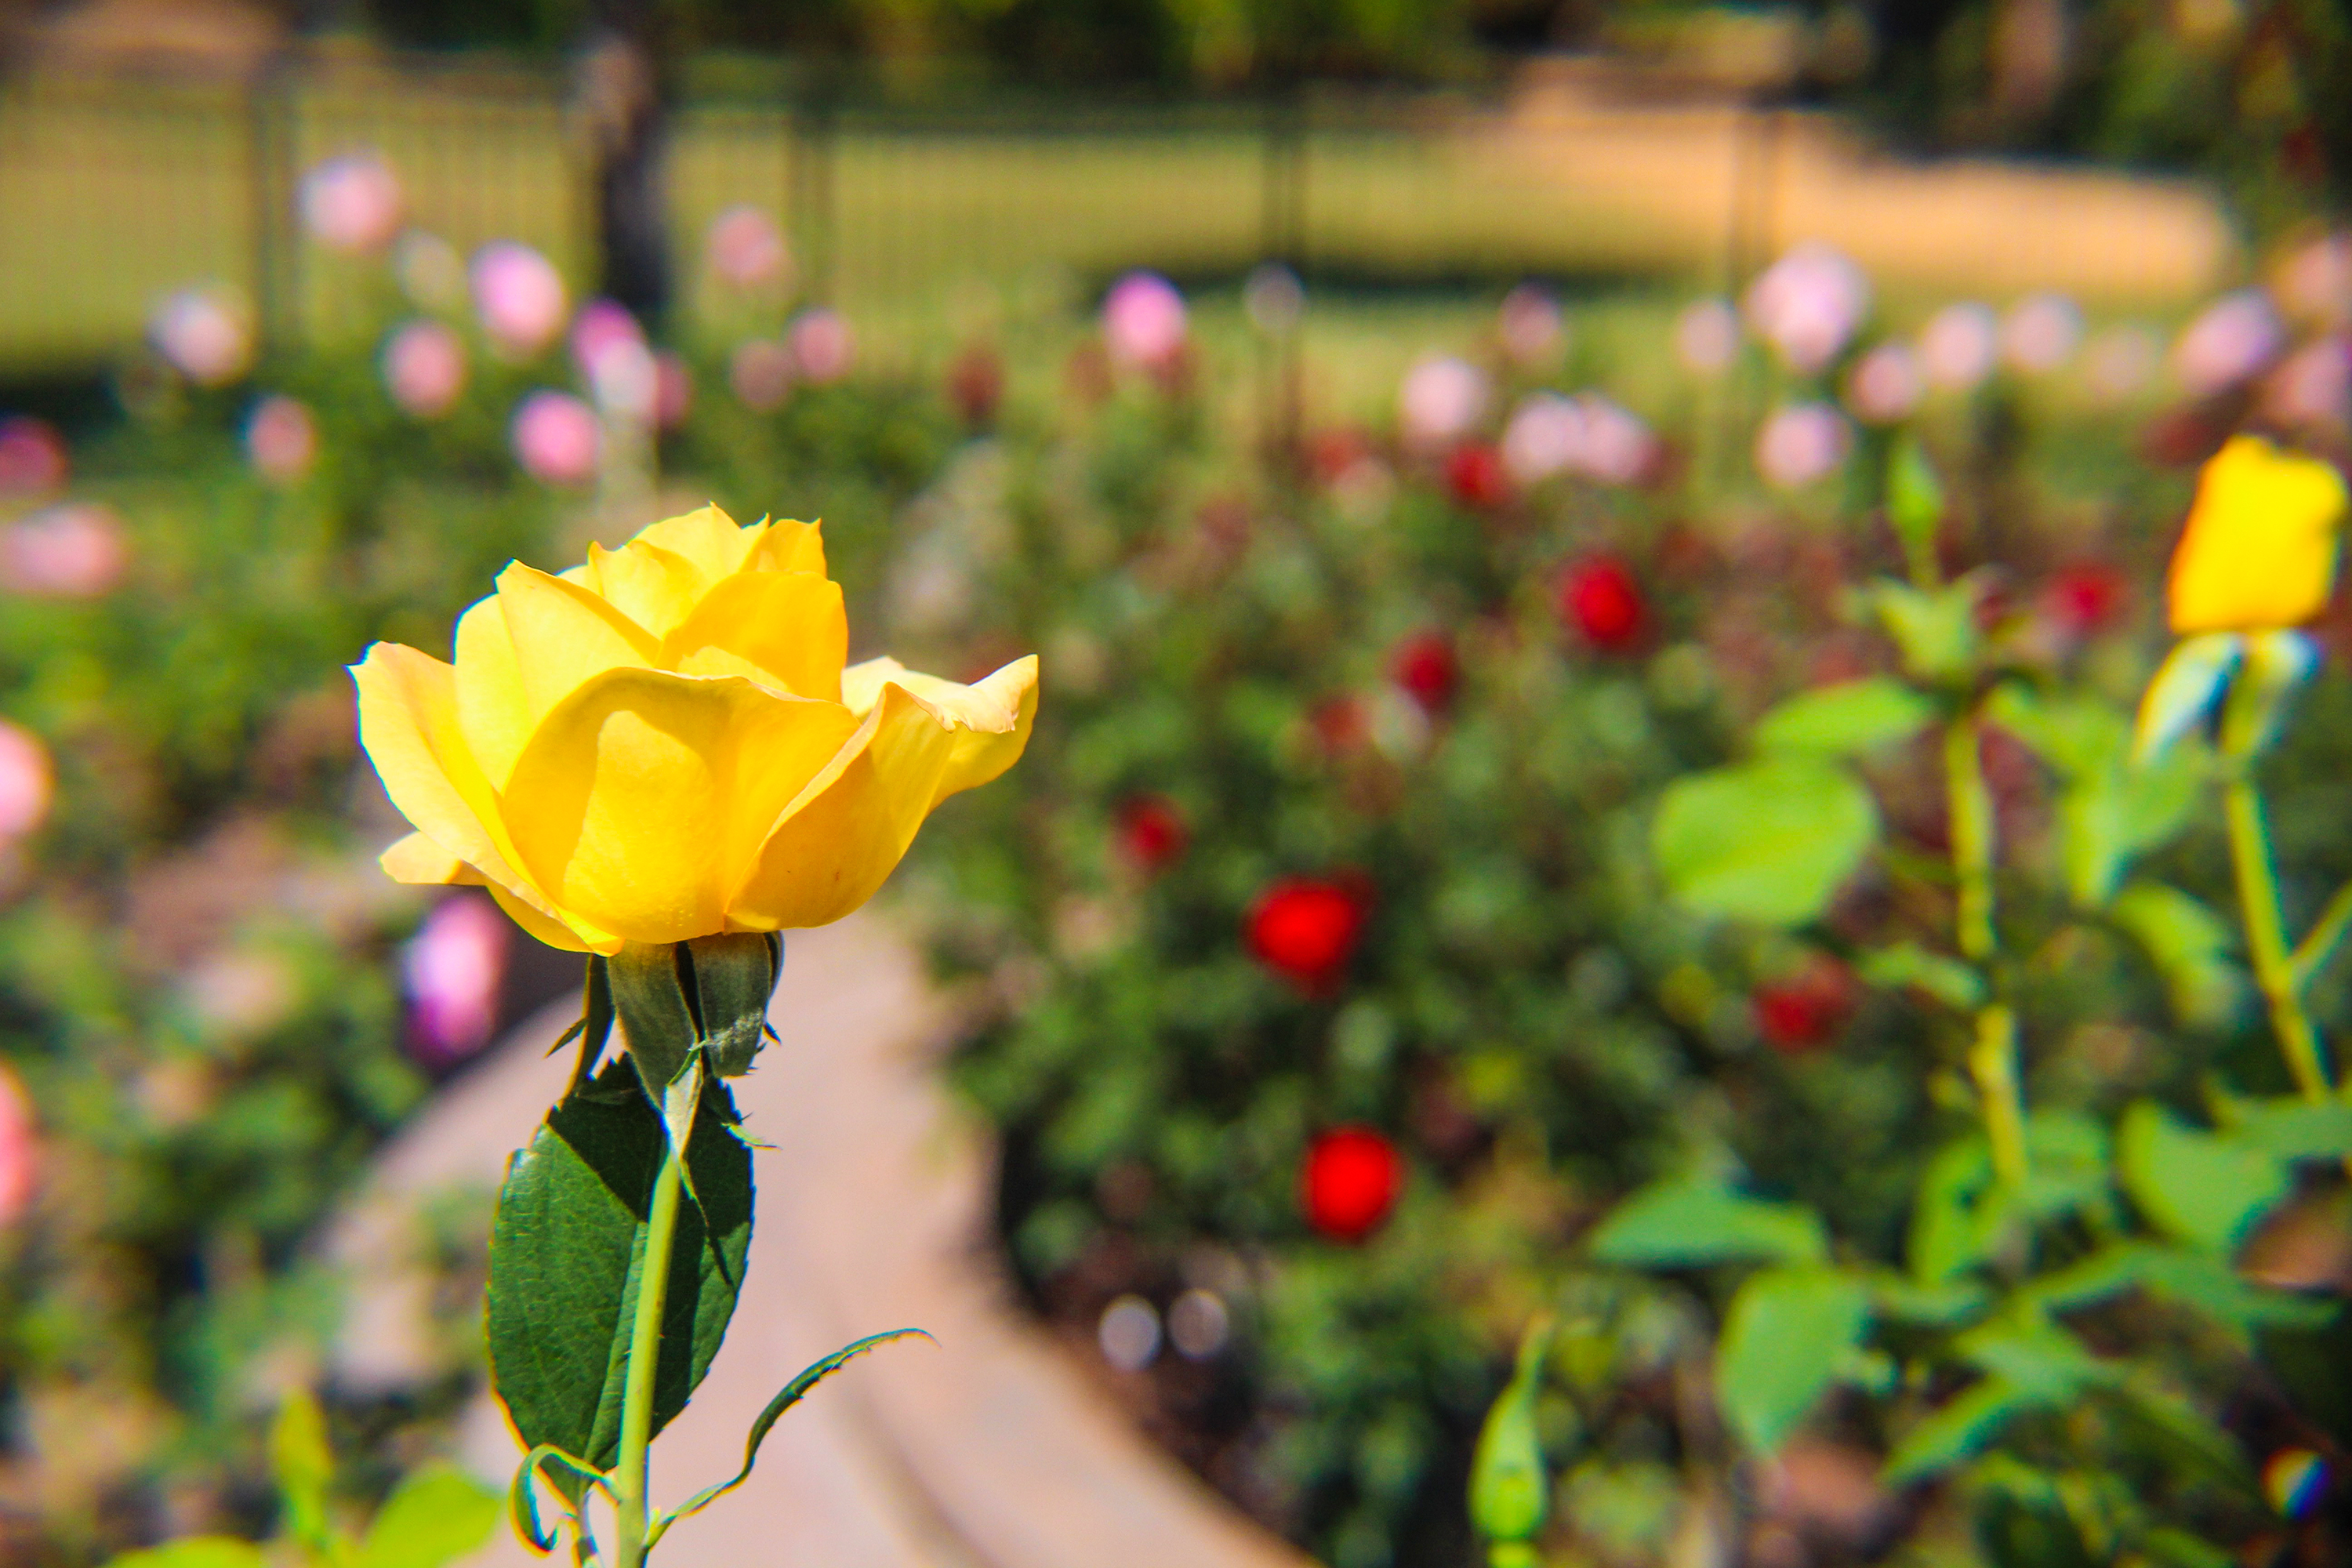 The Rose Garden at Washington Oaks